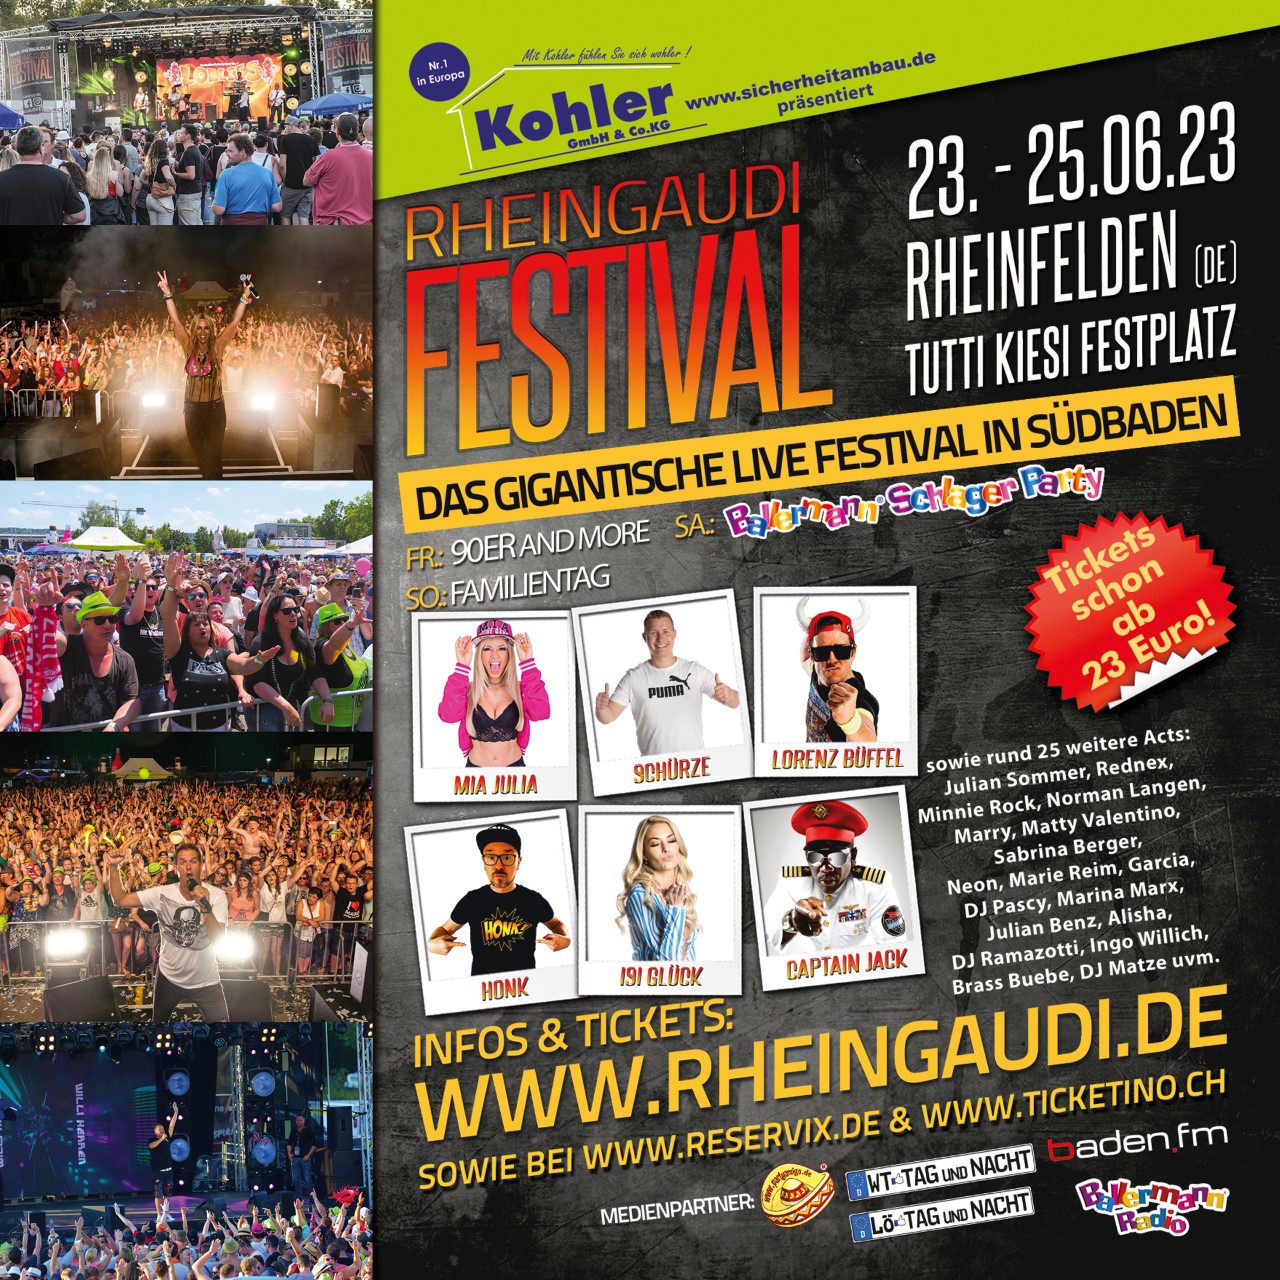 Party bis zum Anschlag: RheinGaudi Festival vom 23. – 25.06.23